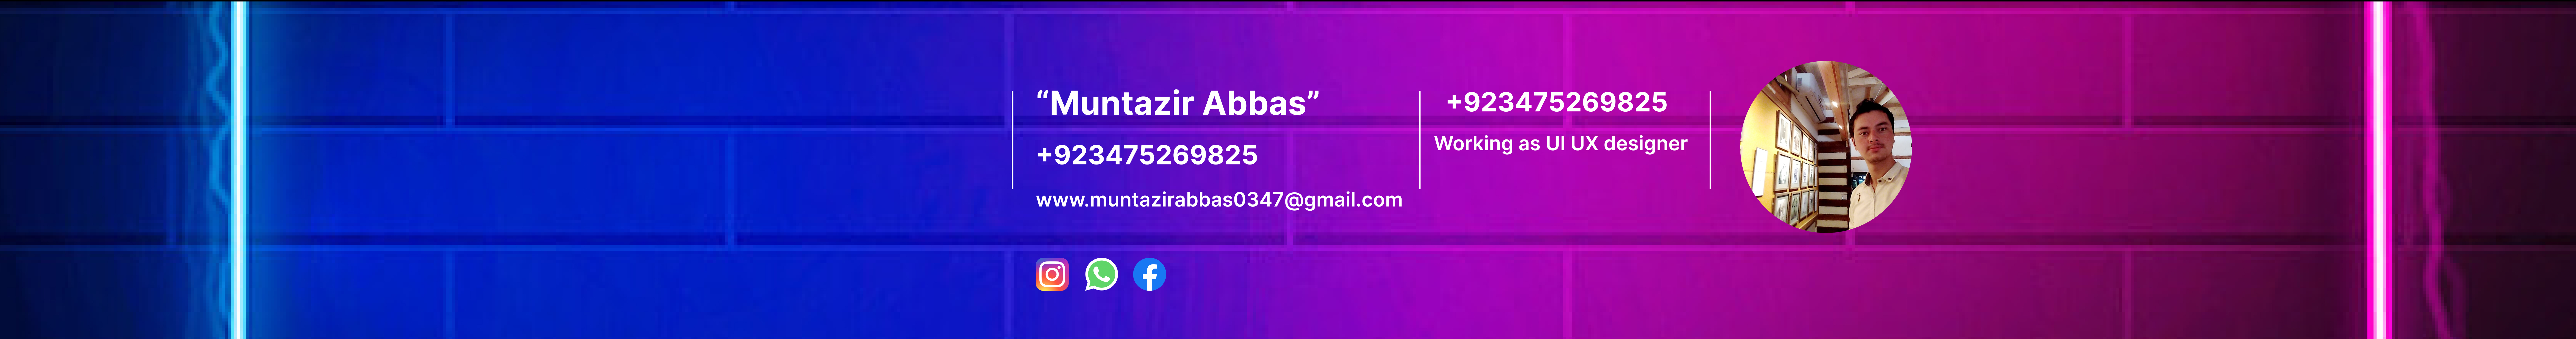 Profil-Banner von Muntazir Abbas